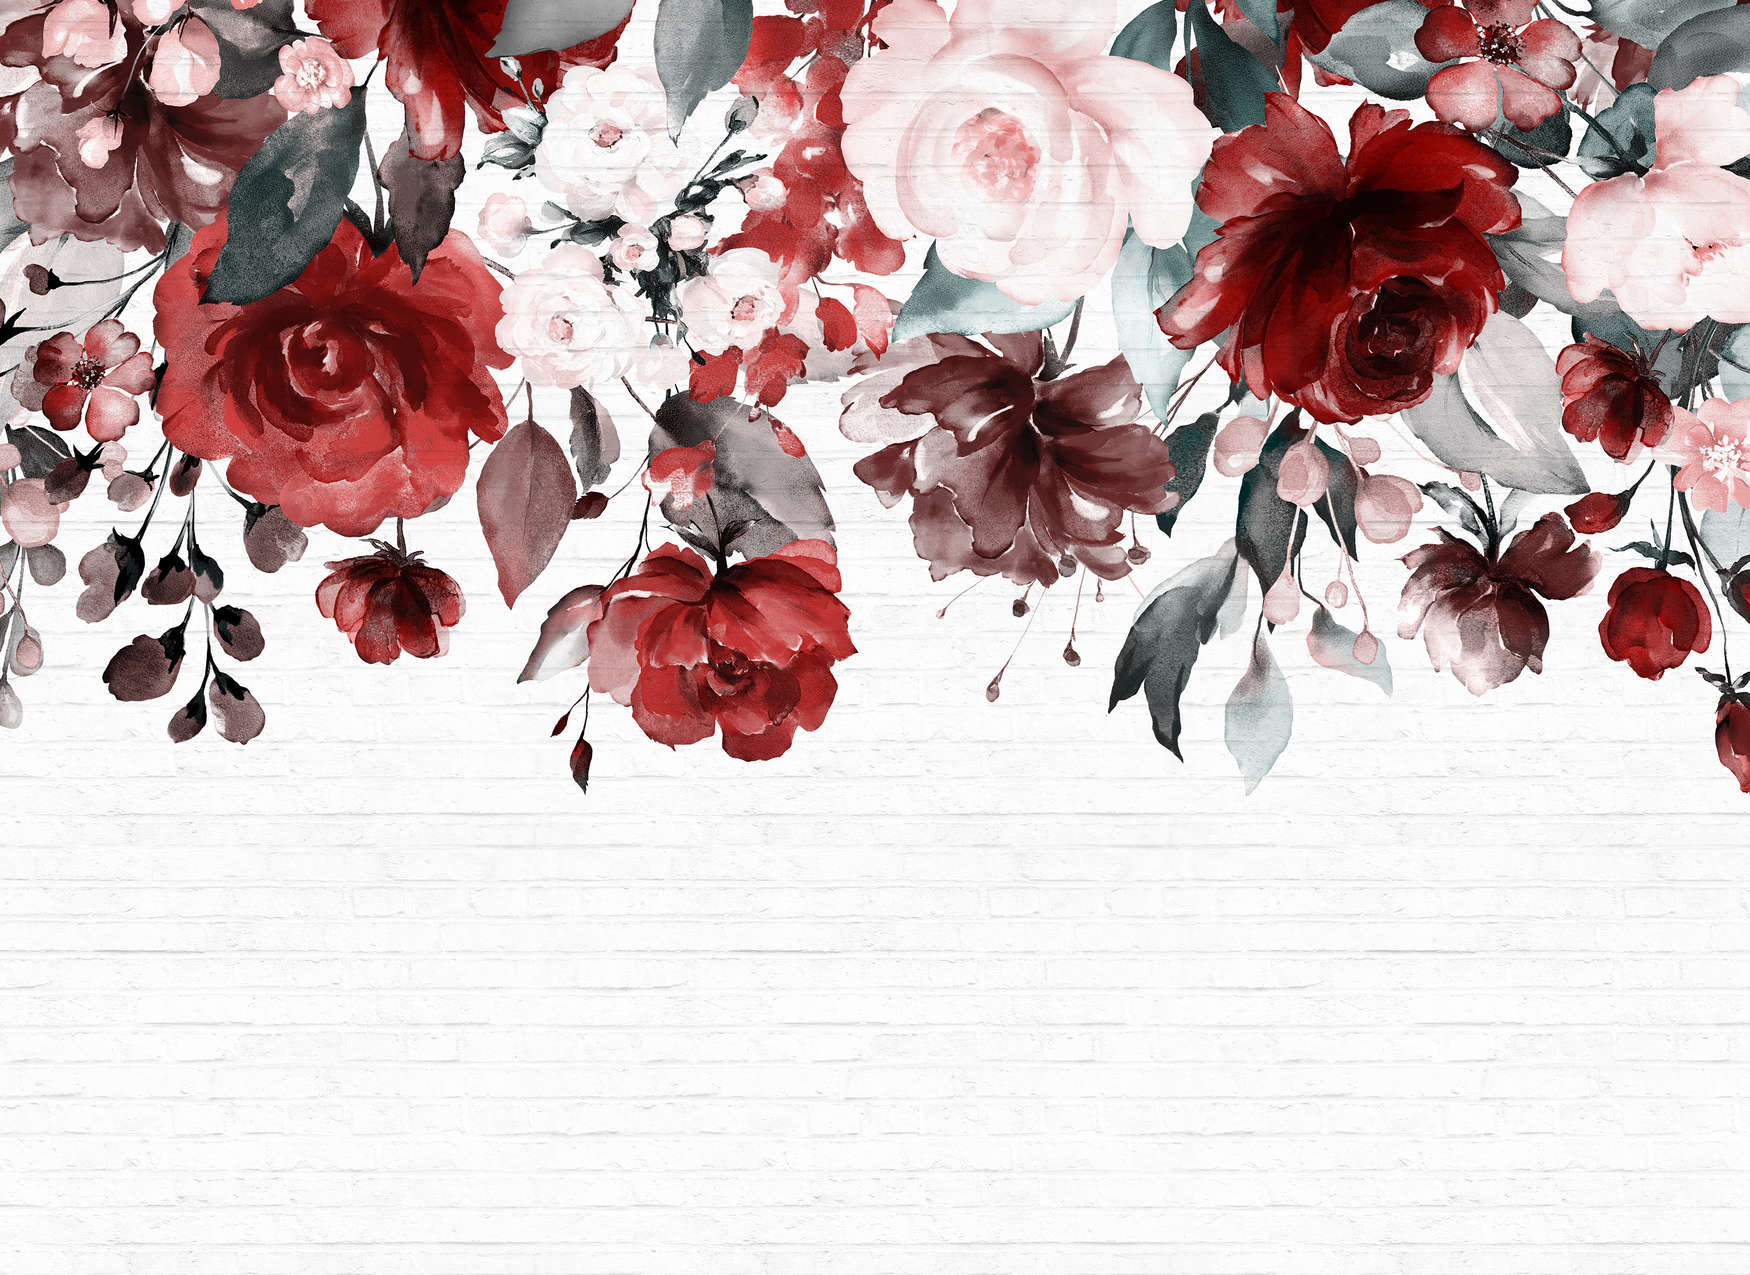             Knallige Blumen an Wand in Steinoptik – Weiß, Rot, Rosa
        